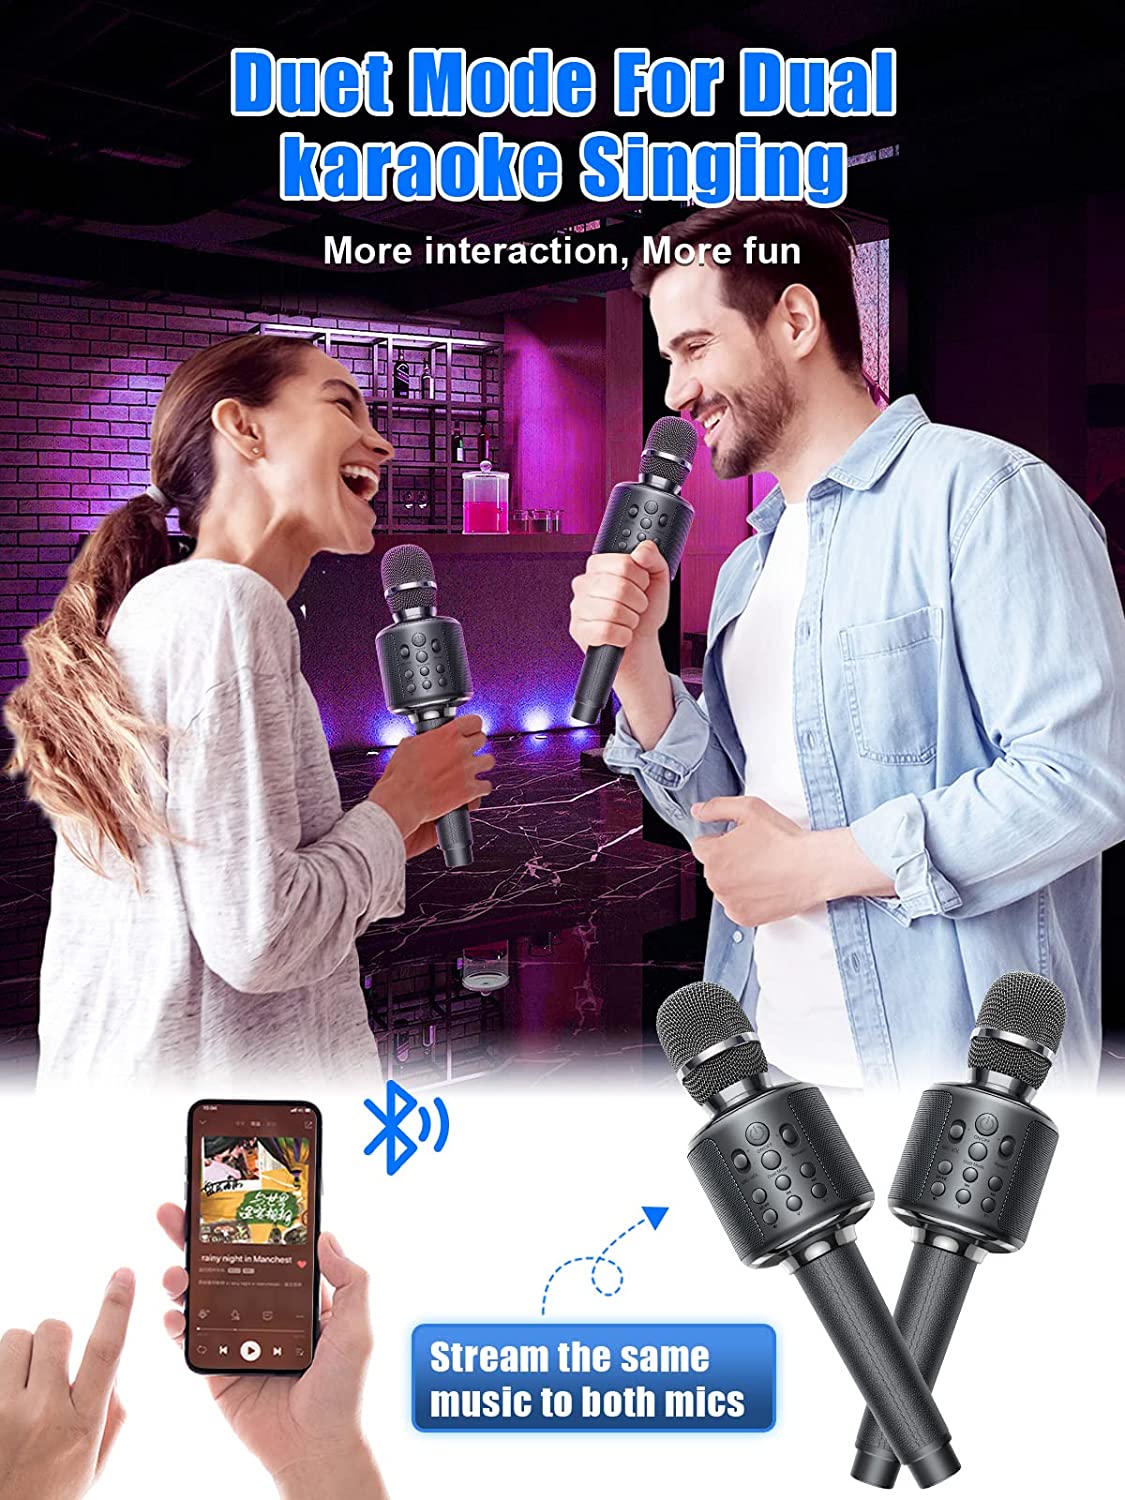 Un microphone sans fil de haute qualité se connecte à Bluetooth